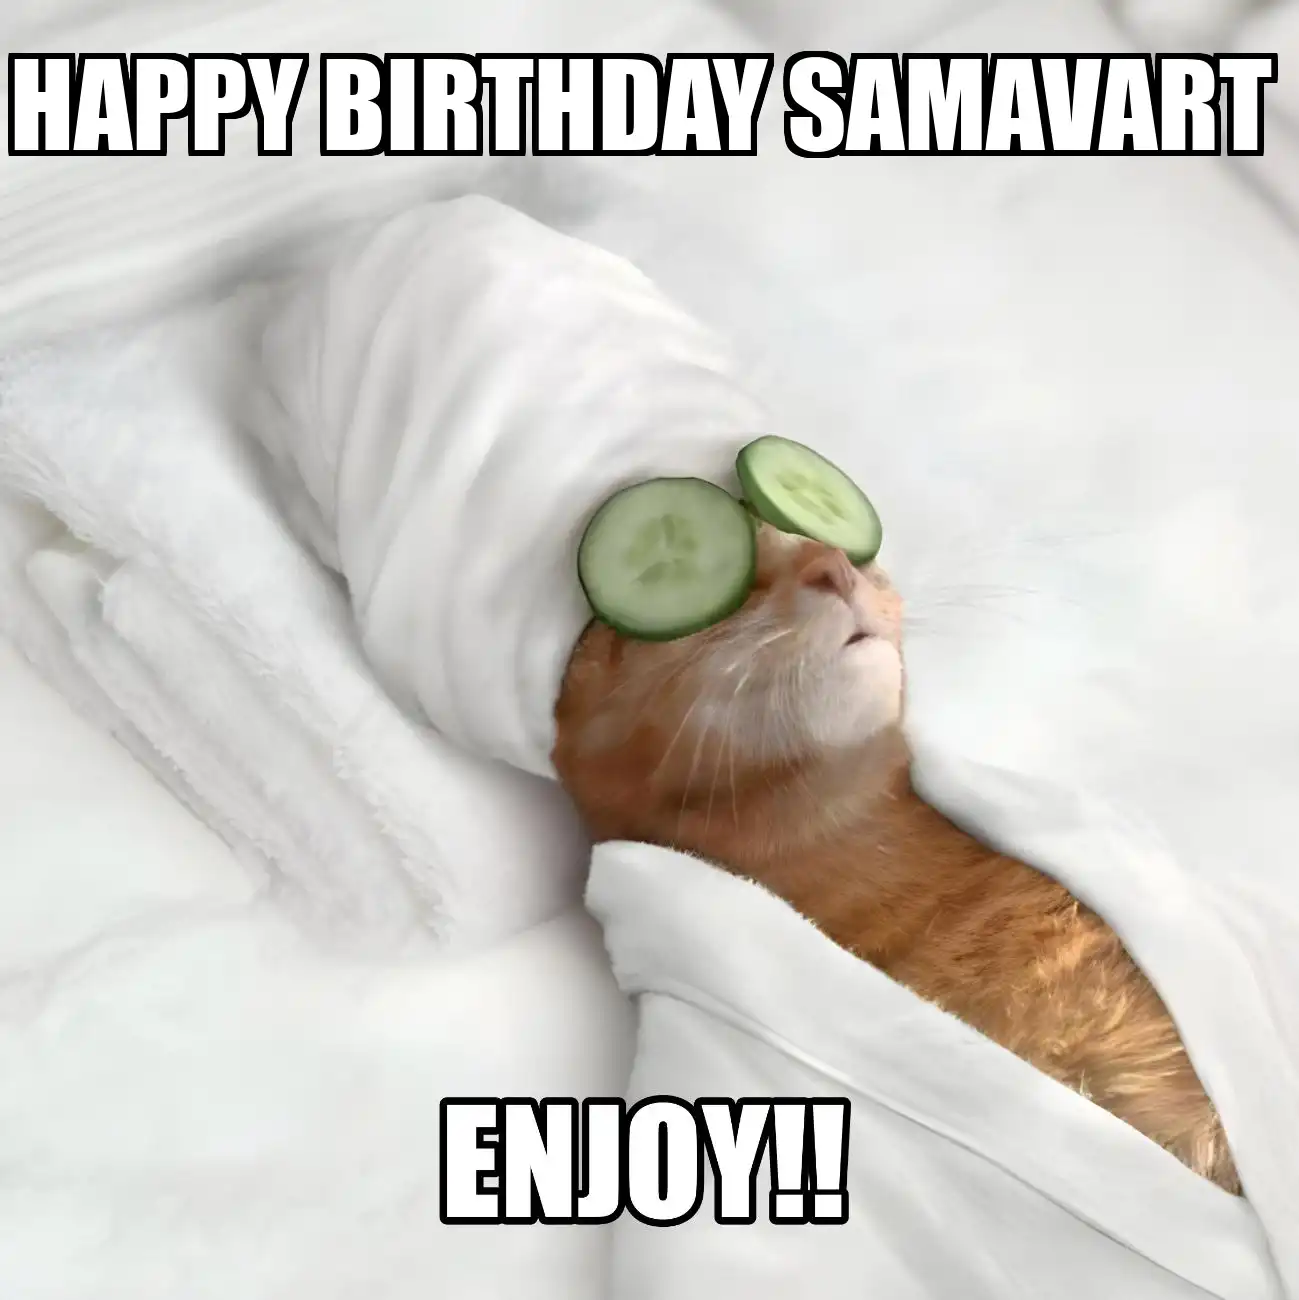 Happy Birthday Samavart Enjoy Cat Meme